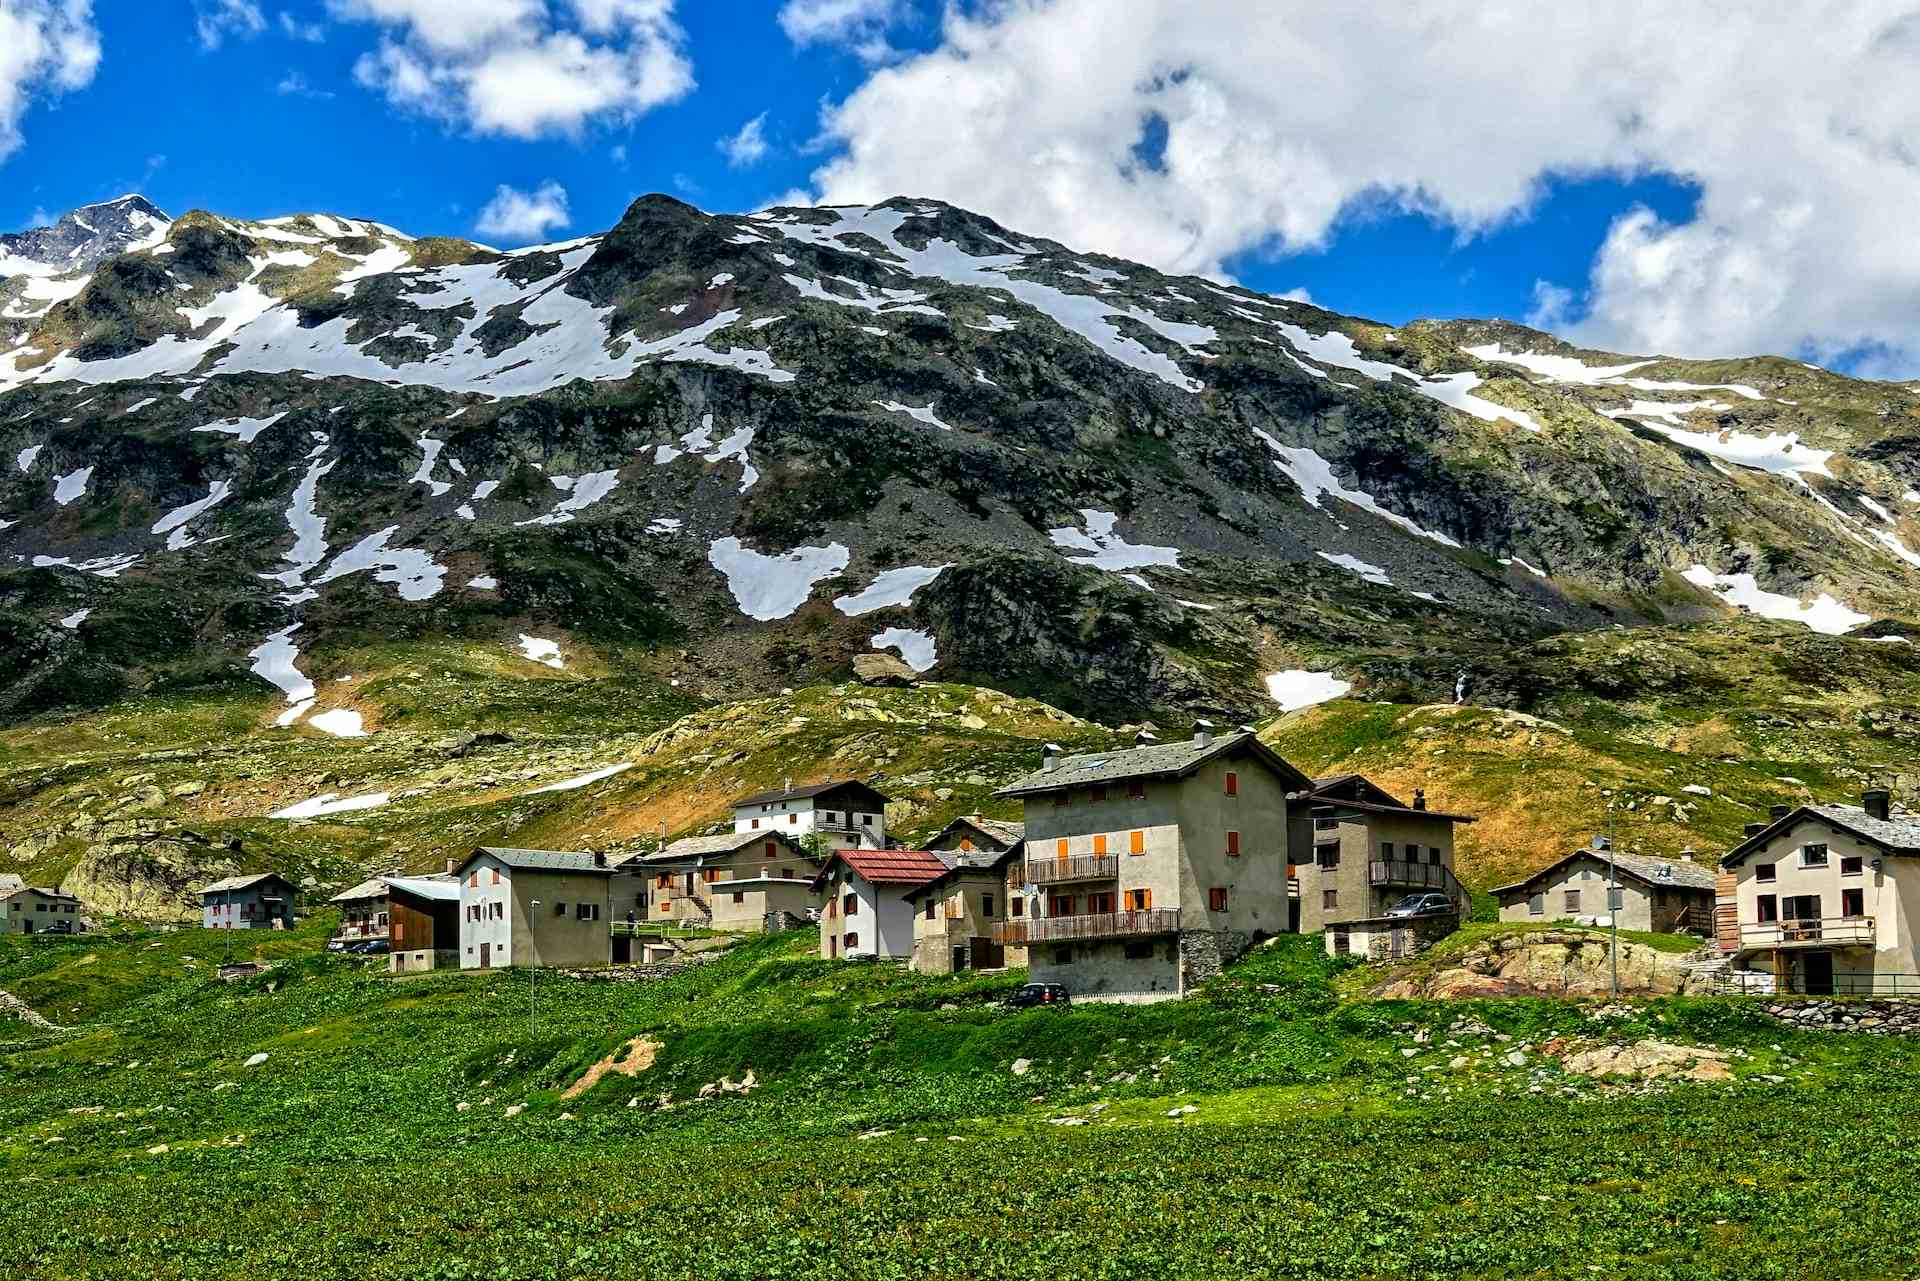 glatsch dil bein puril, Produzent in Breil/Brigels Kanton Graubünden in der Schweiz